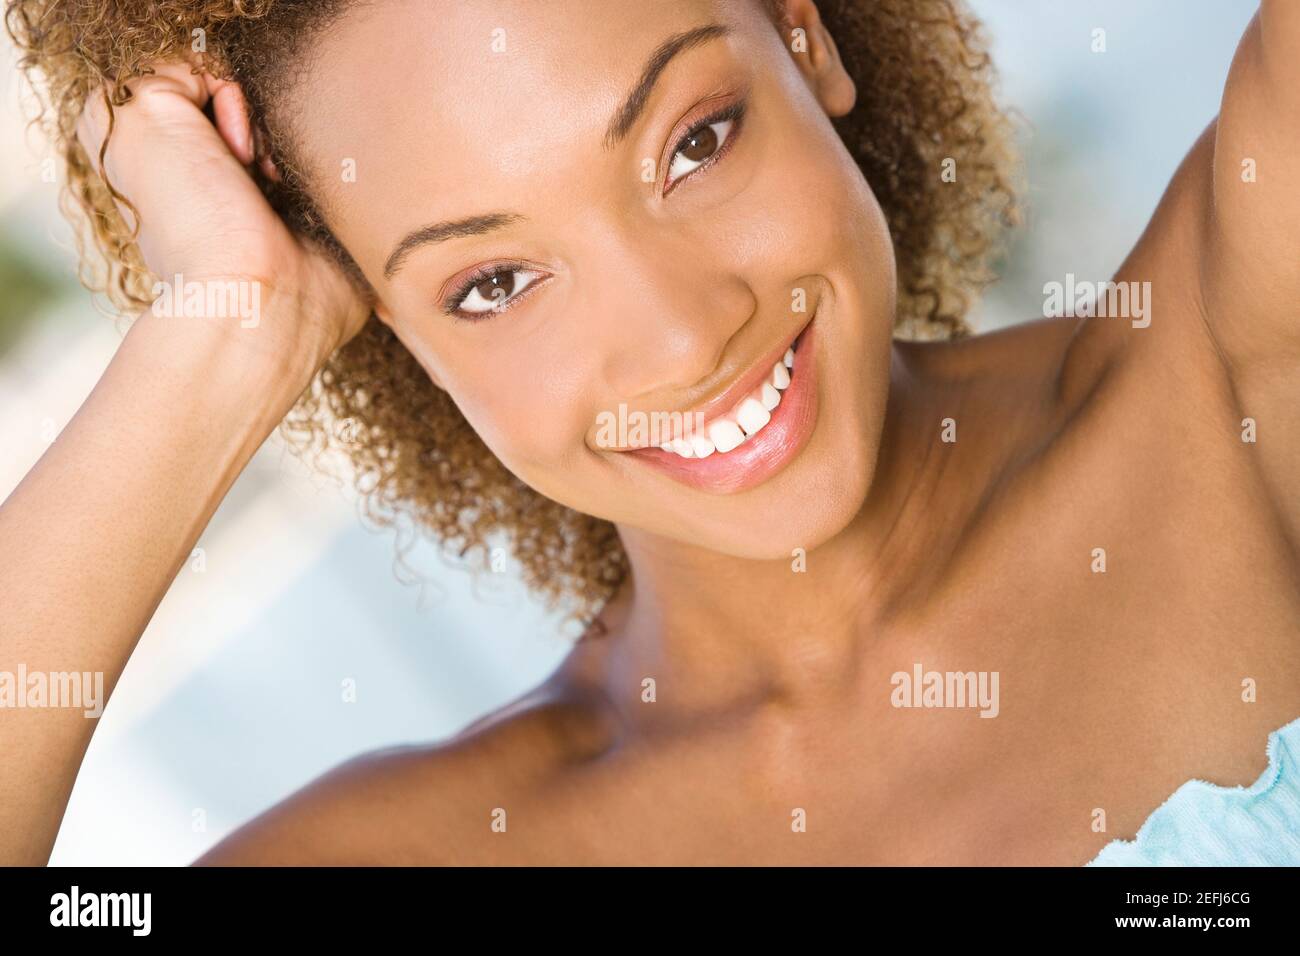 Retrato de una joven mujer sonriendo Foto de stock